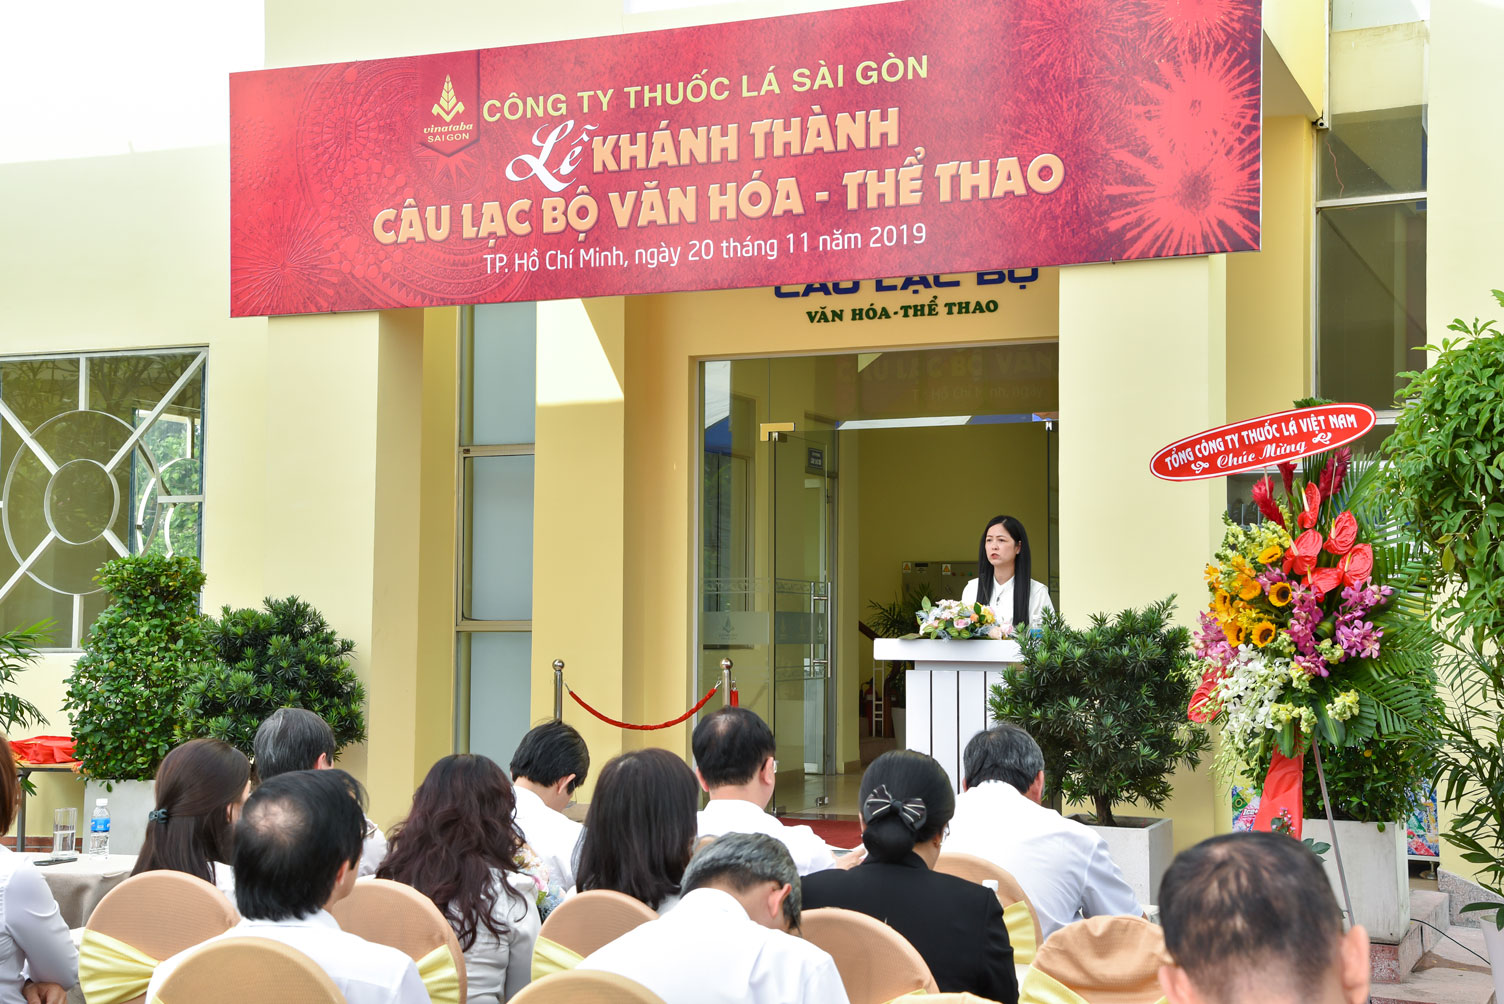 Bà Nguyễn Đình Loan Phương - Chánh Văn Phòng, Chủ nhiệm Câu lạc bộ phát biểu phương hướng hoạt động của CLB